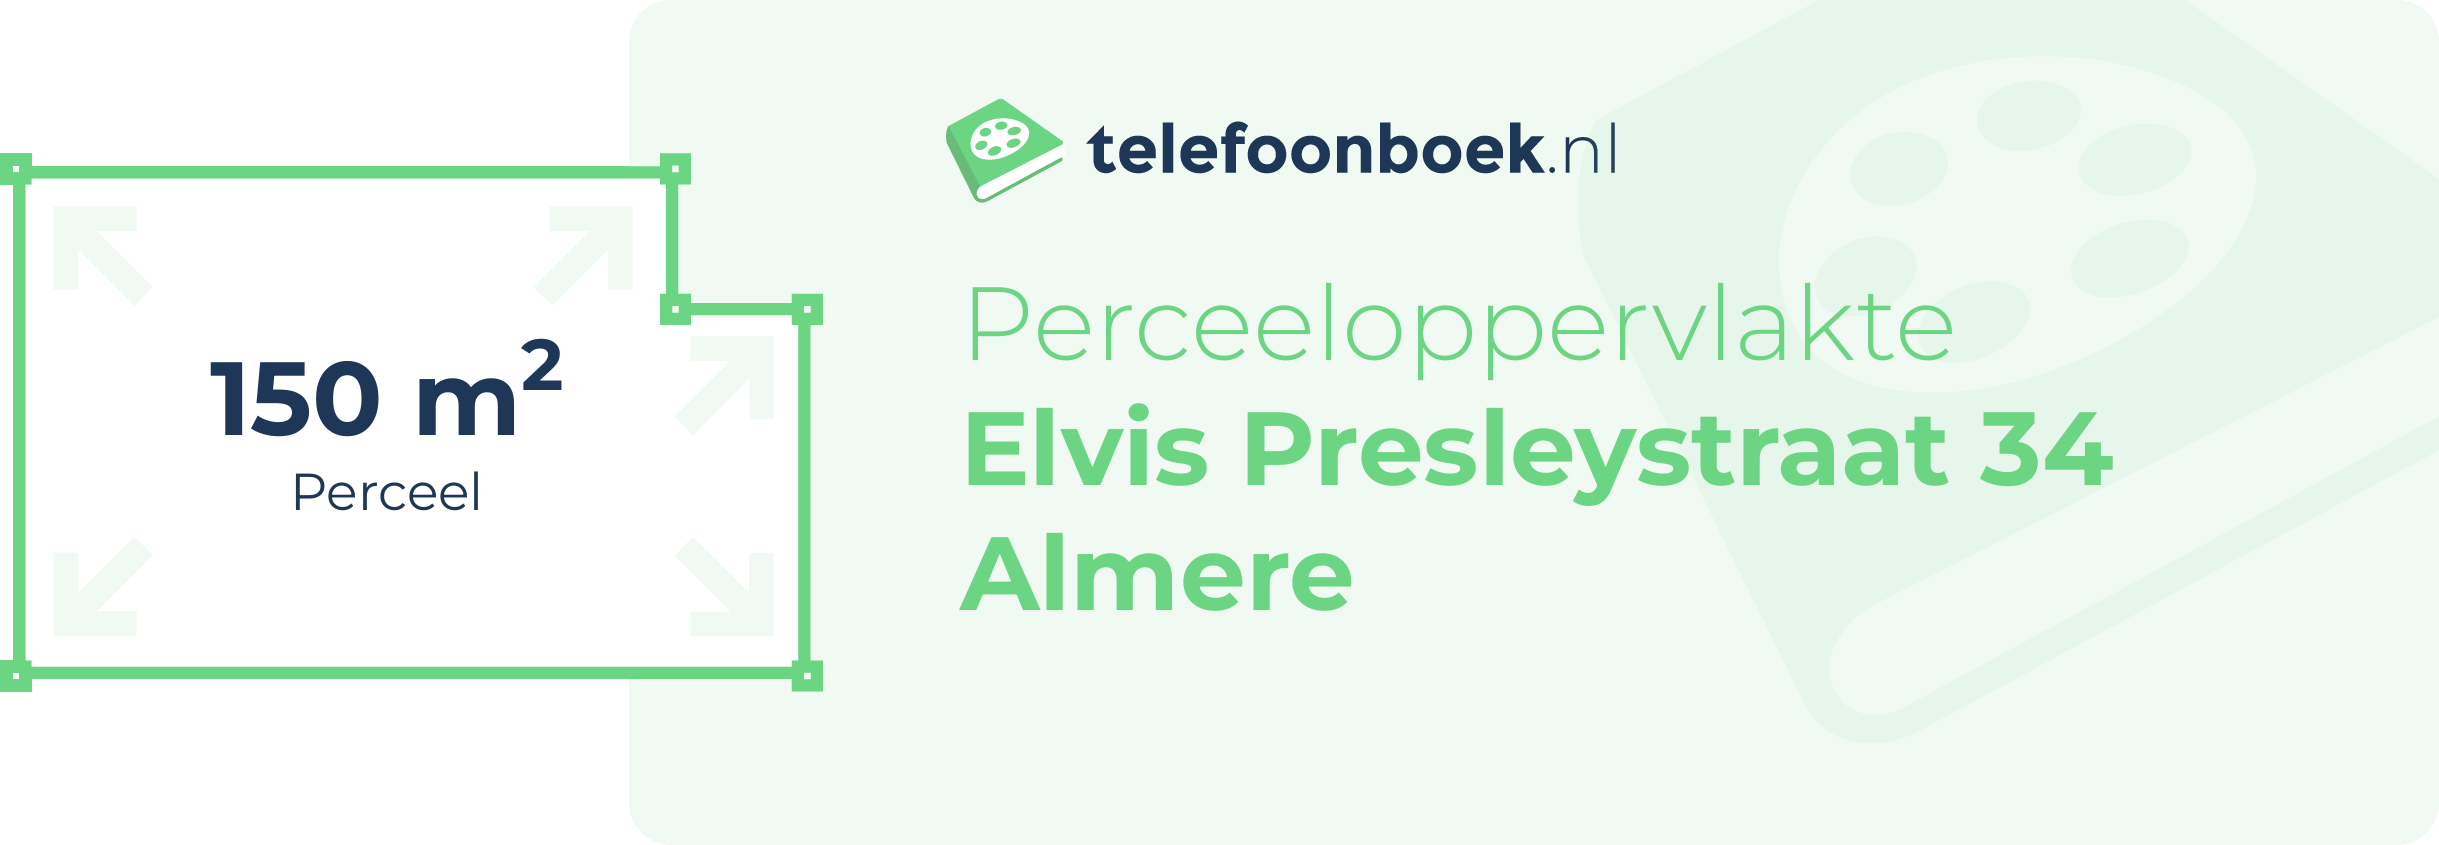 Perceeloppervlakte Elvis Presleystraat 34 Almere